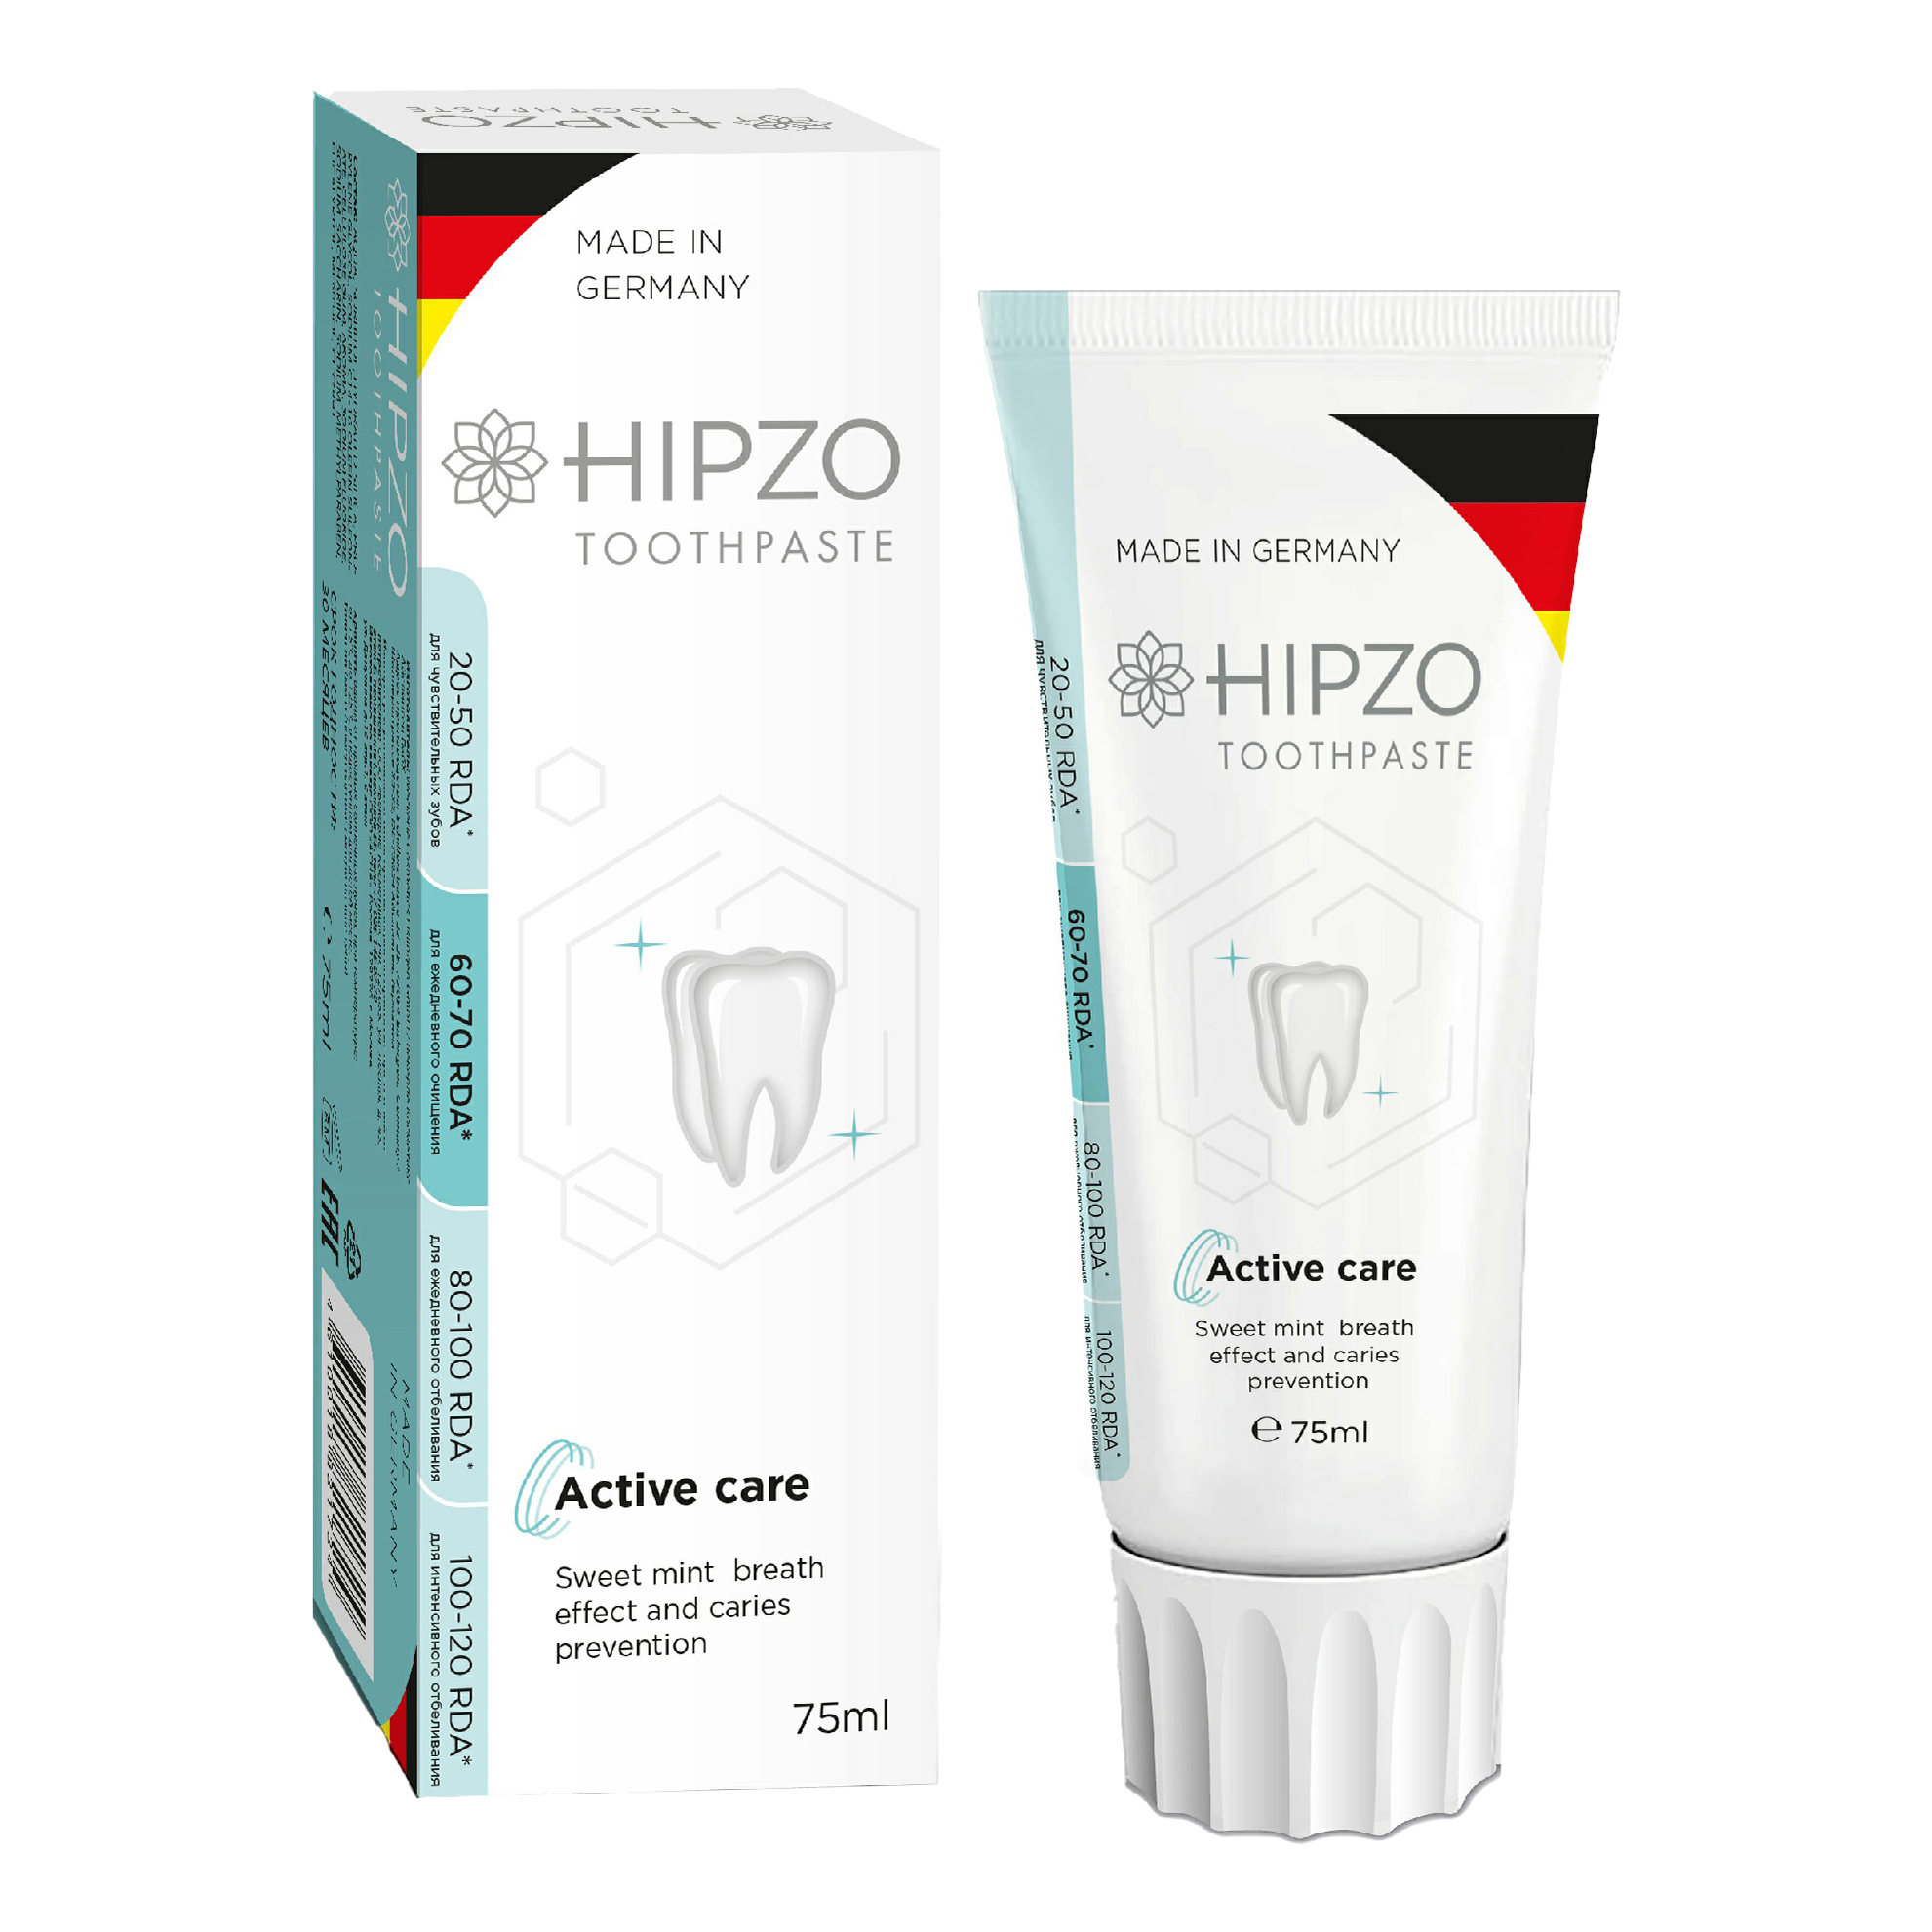 Зубная паста Hipzo Active care сладкая мята для свежести дыхания и защиты от кариеса 75 мл r o c s pro зубная паста сладкая мята 135 гр